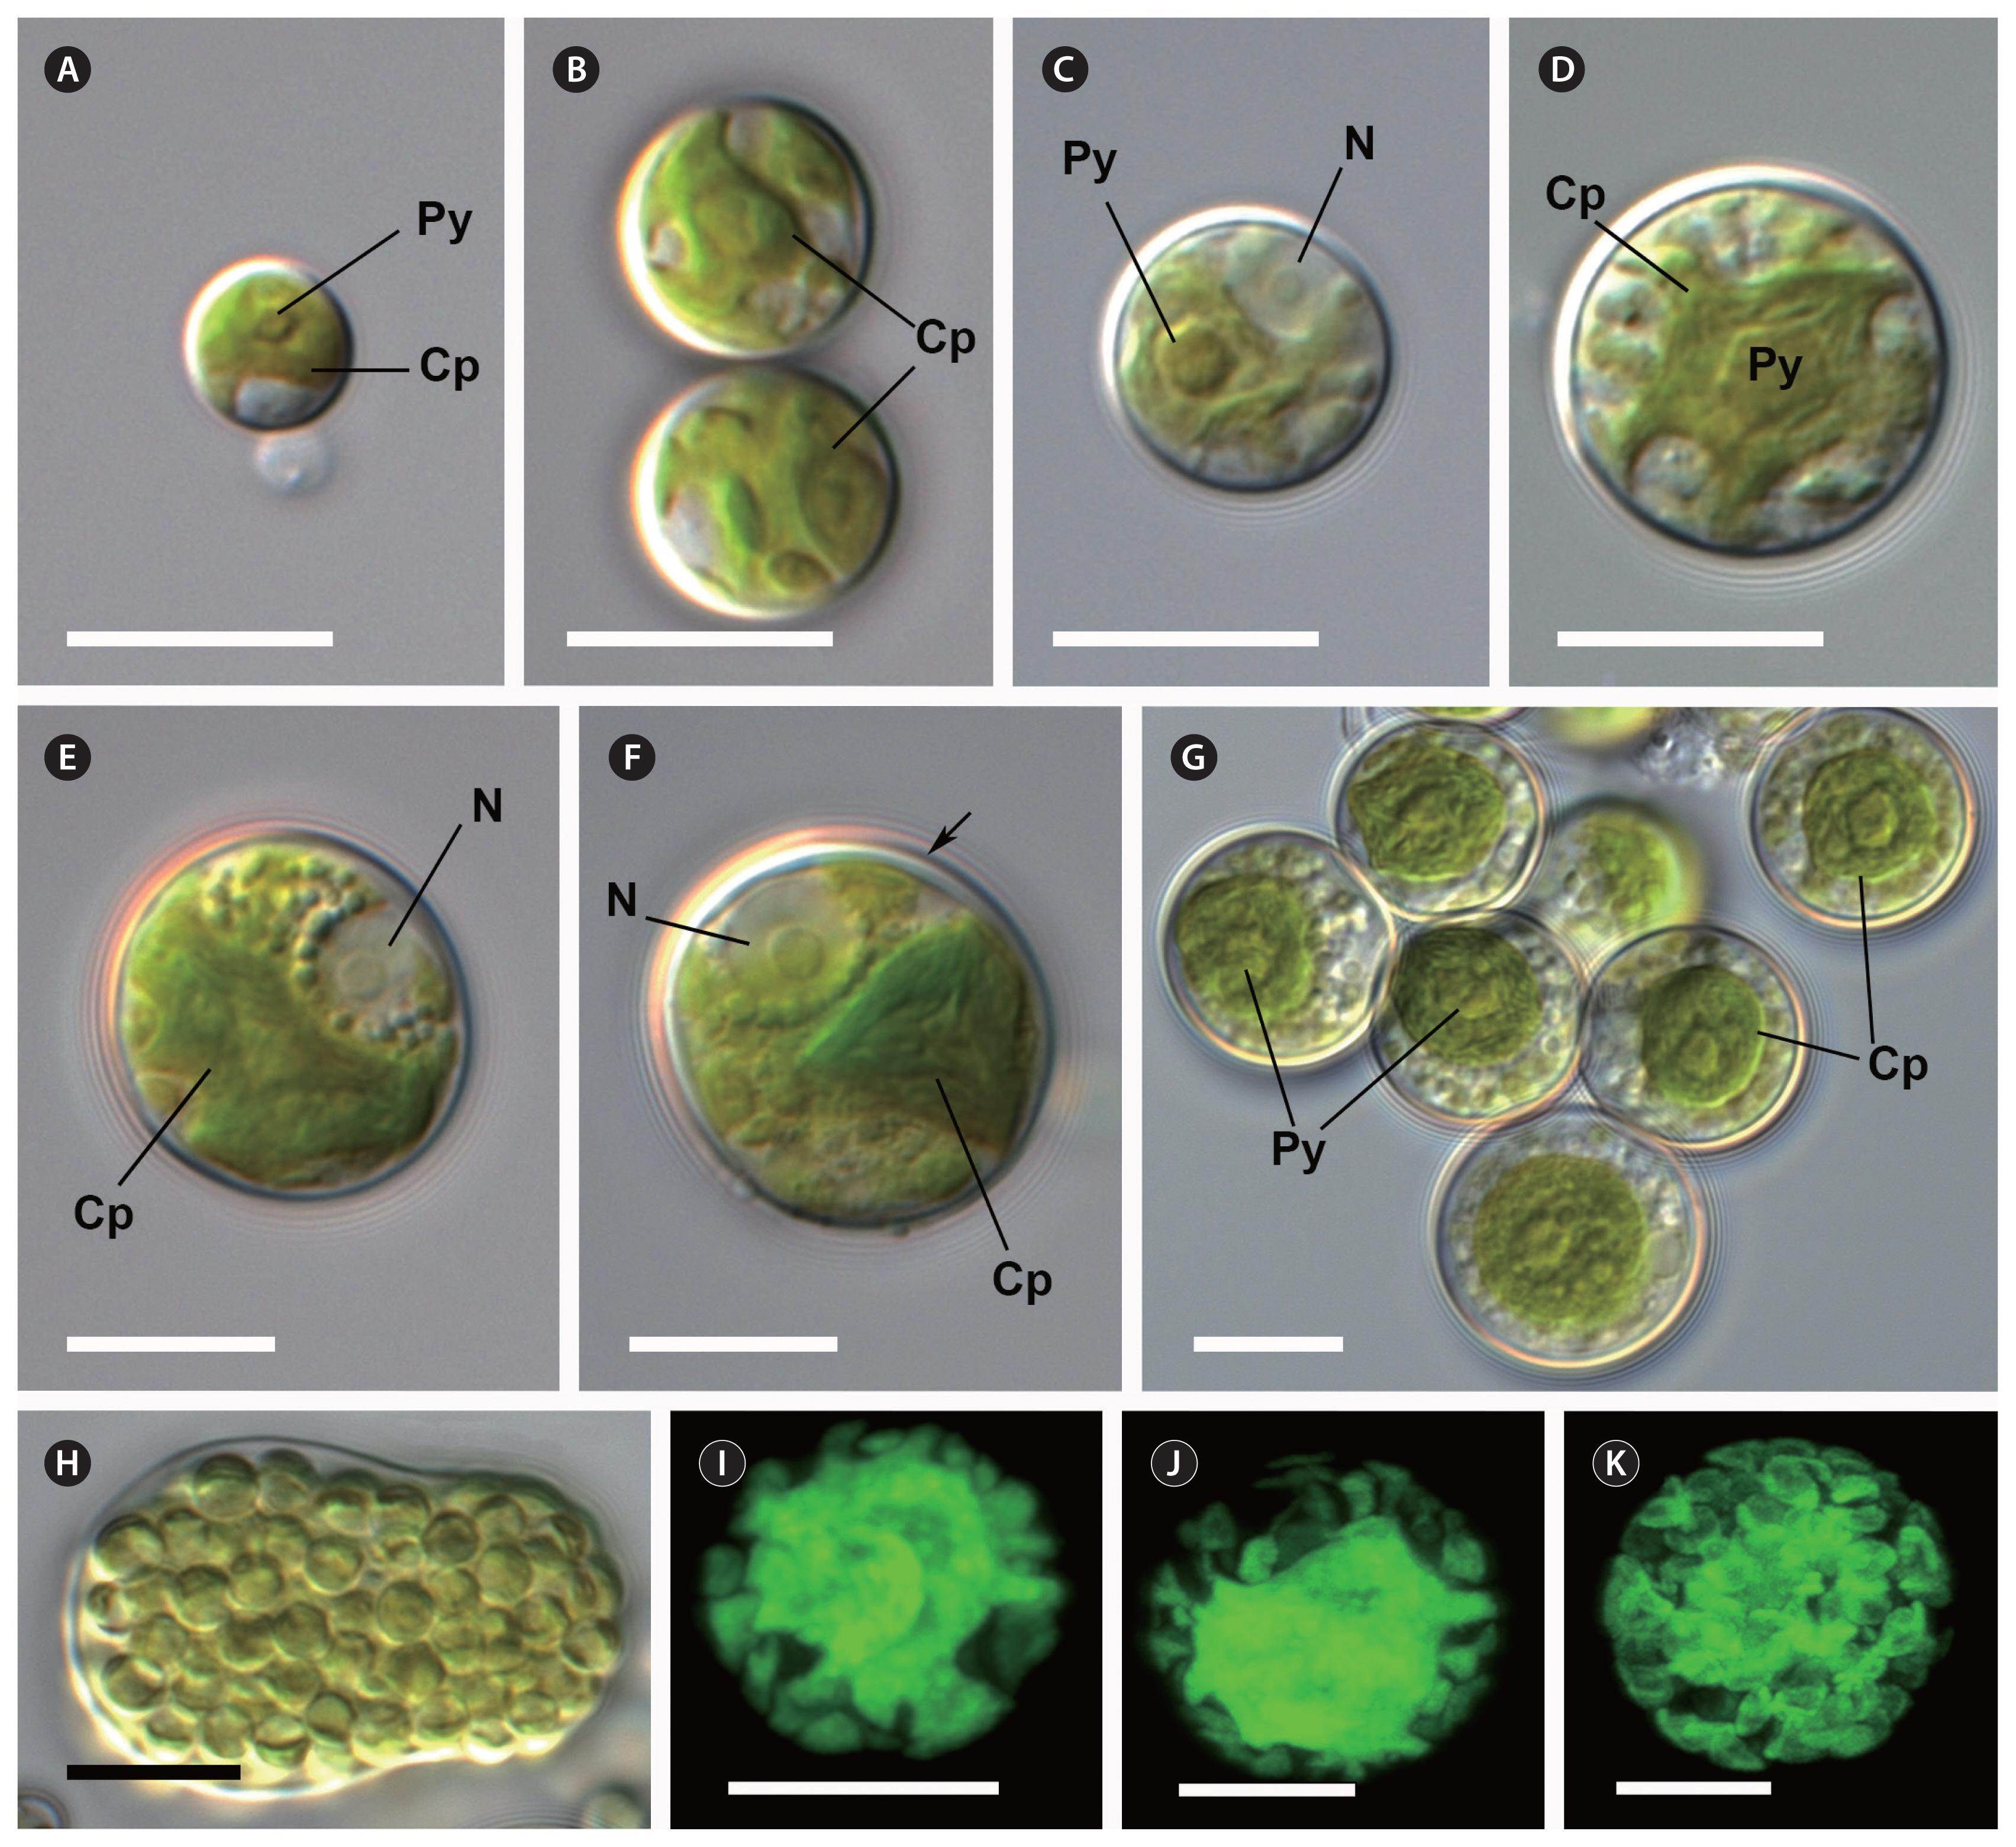 algae-2020-35-1-17f2.jpg